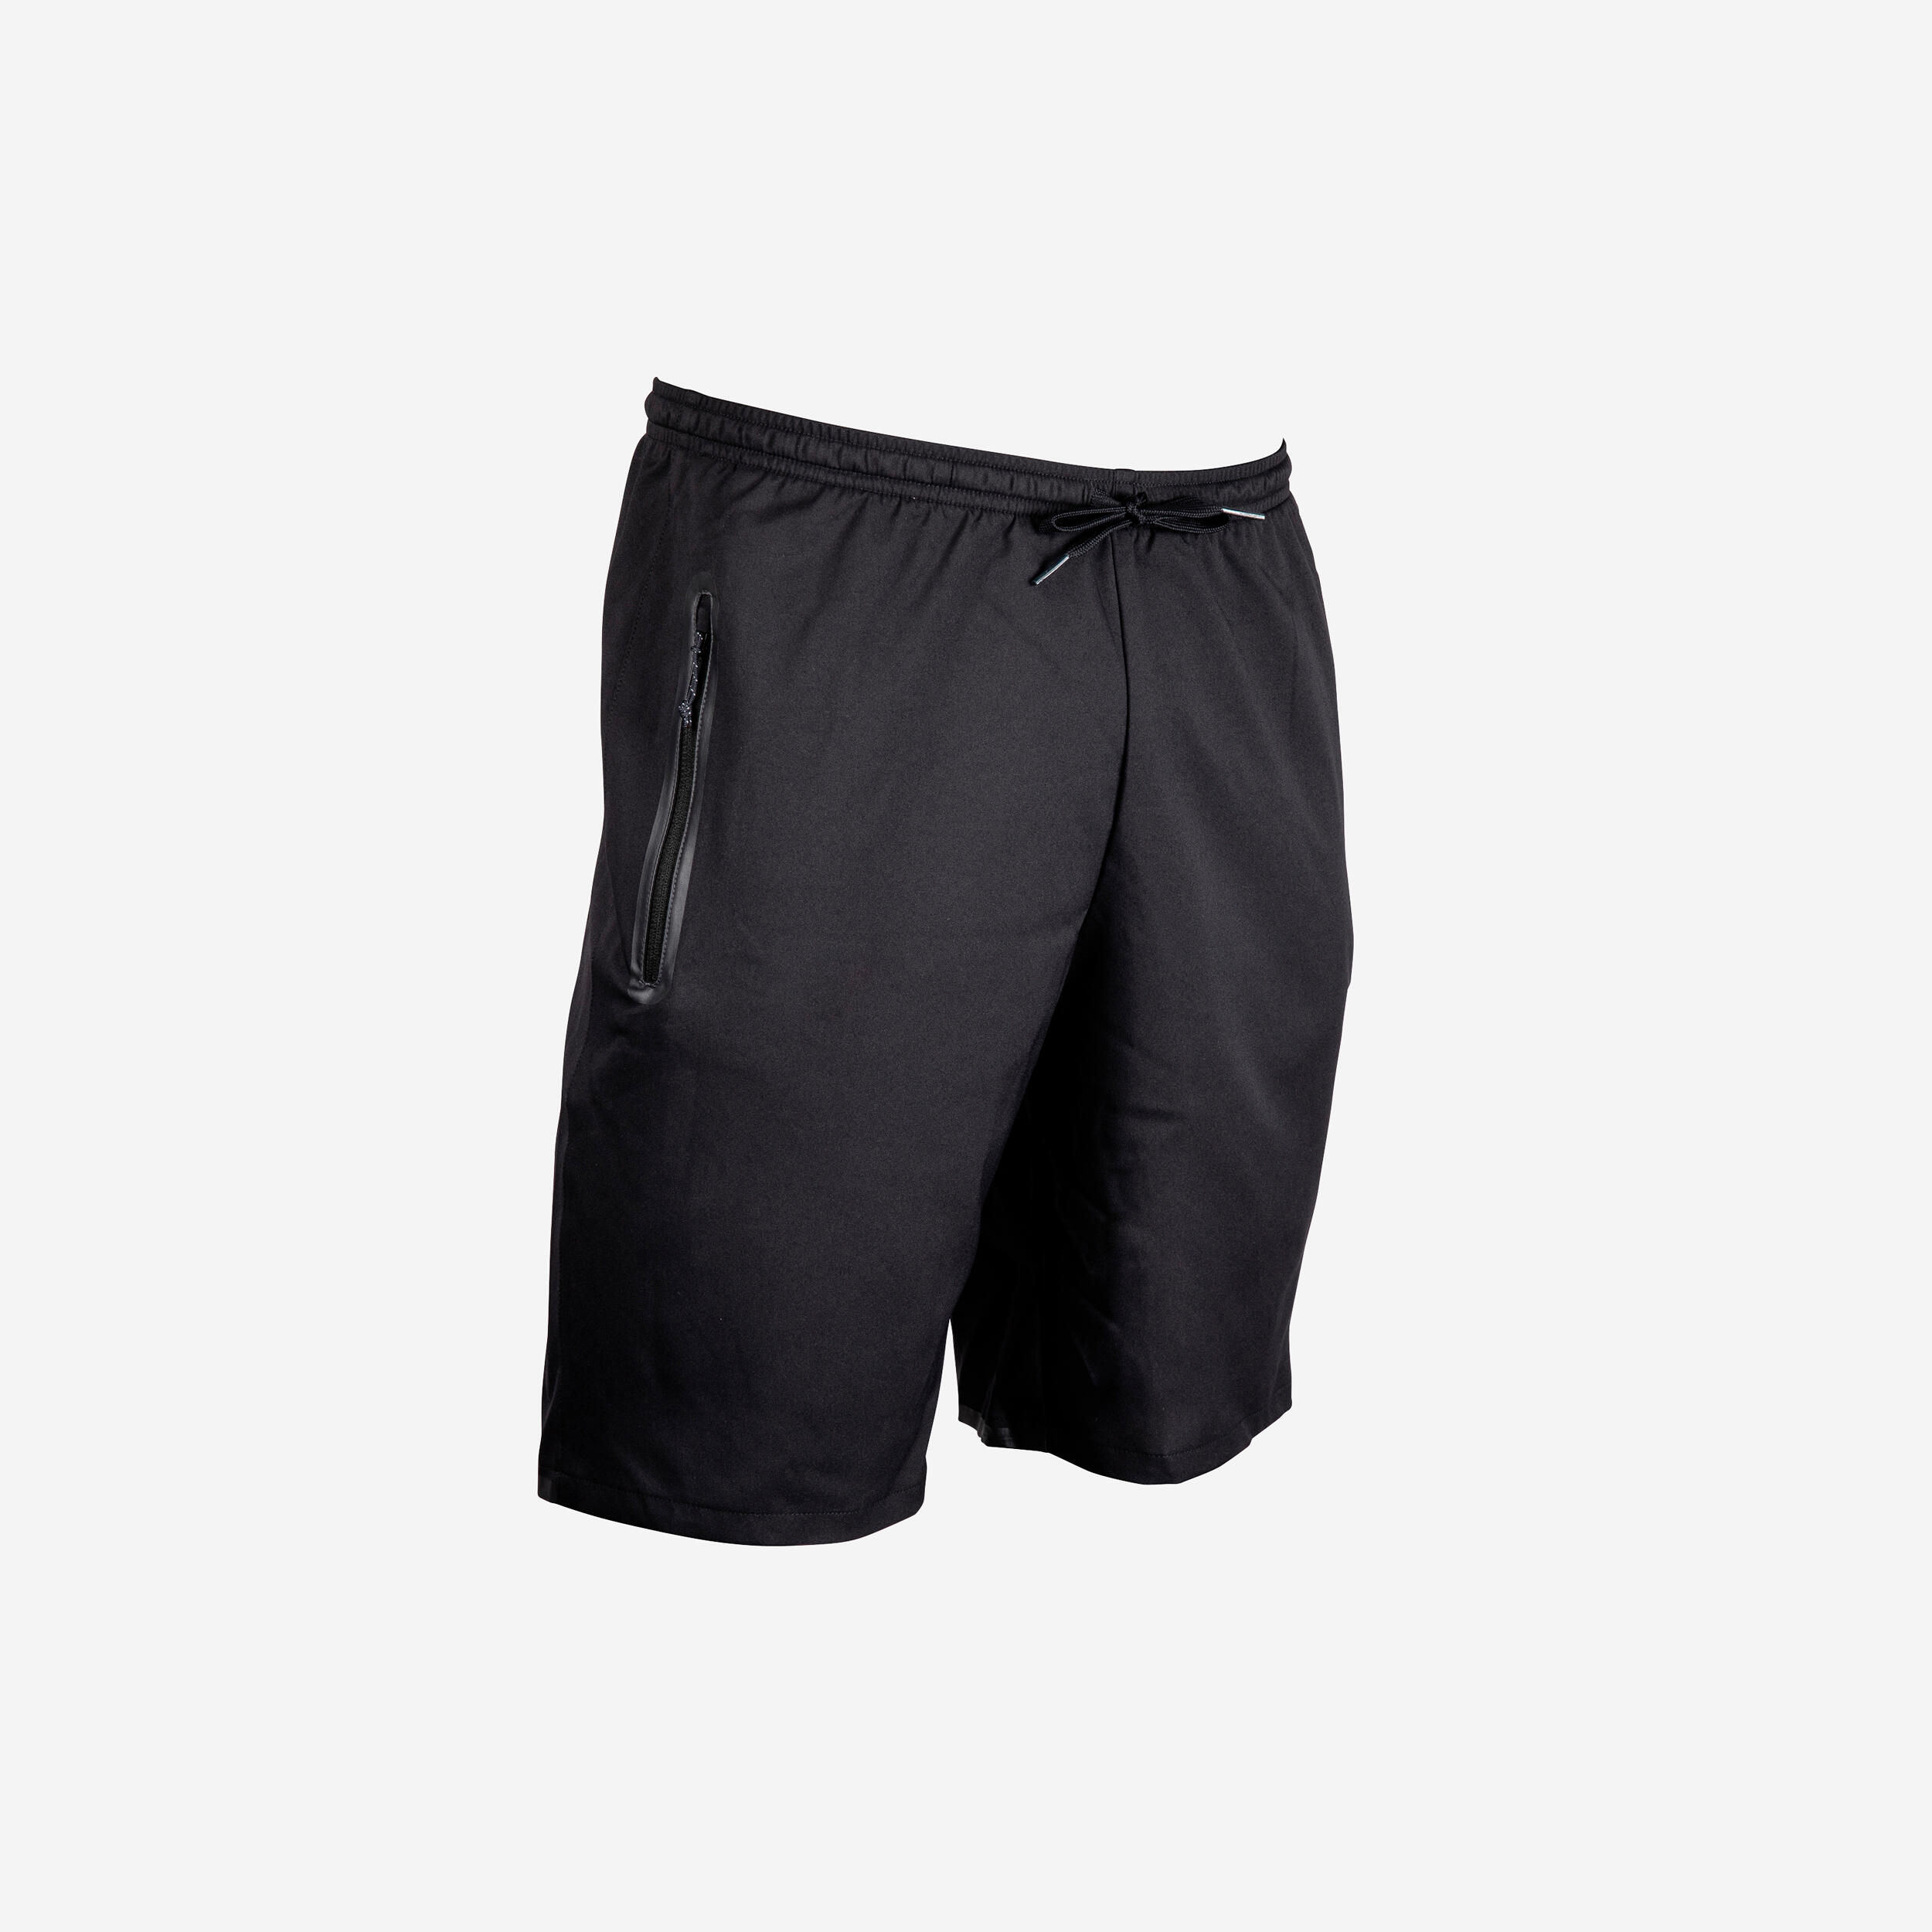 CLOUSPO Short Sport pour Homme avec Poches Zippées Coton